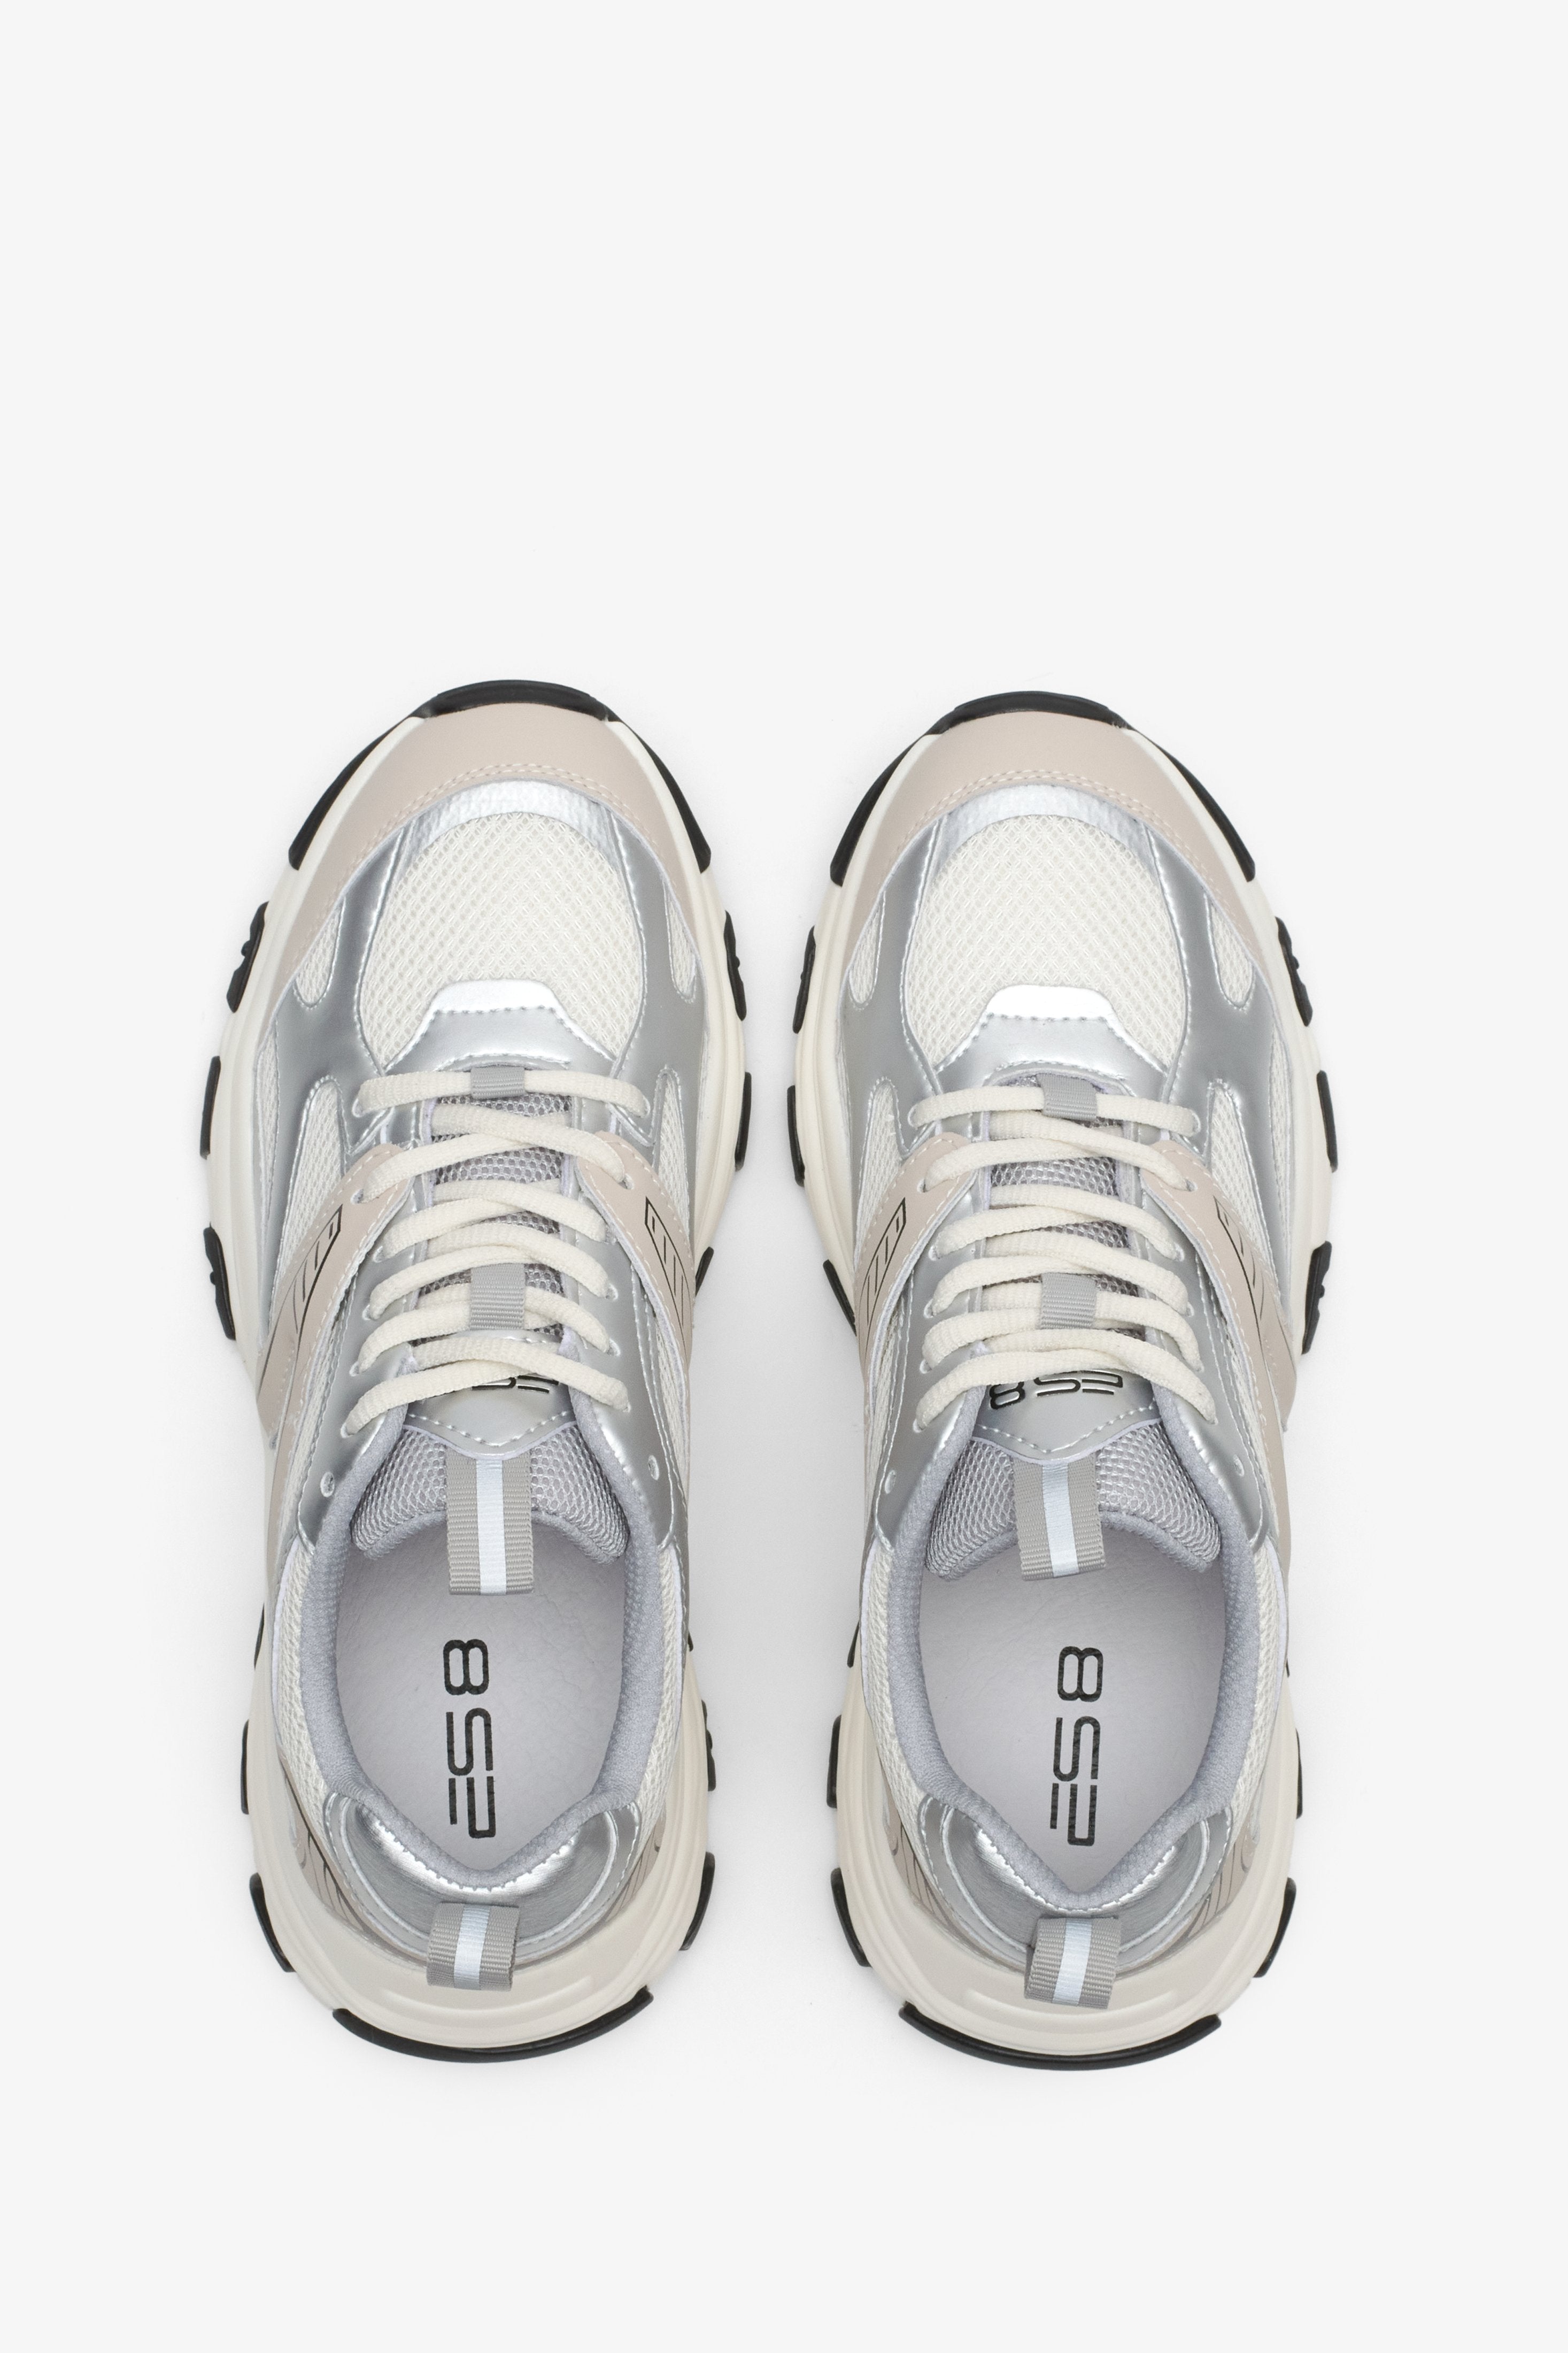 Sneakersy damskie ES8 w kolorze mlecznobeżowo-srebrnym - prezentacja modelu z góry.